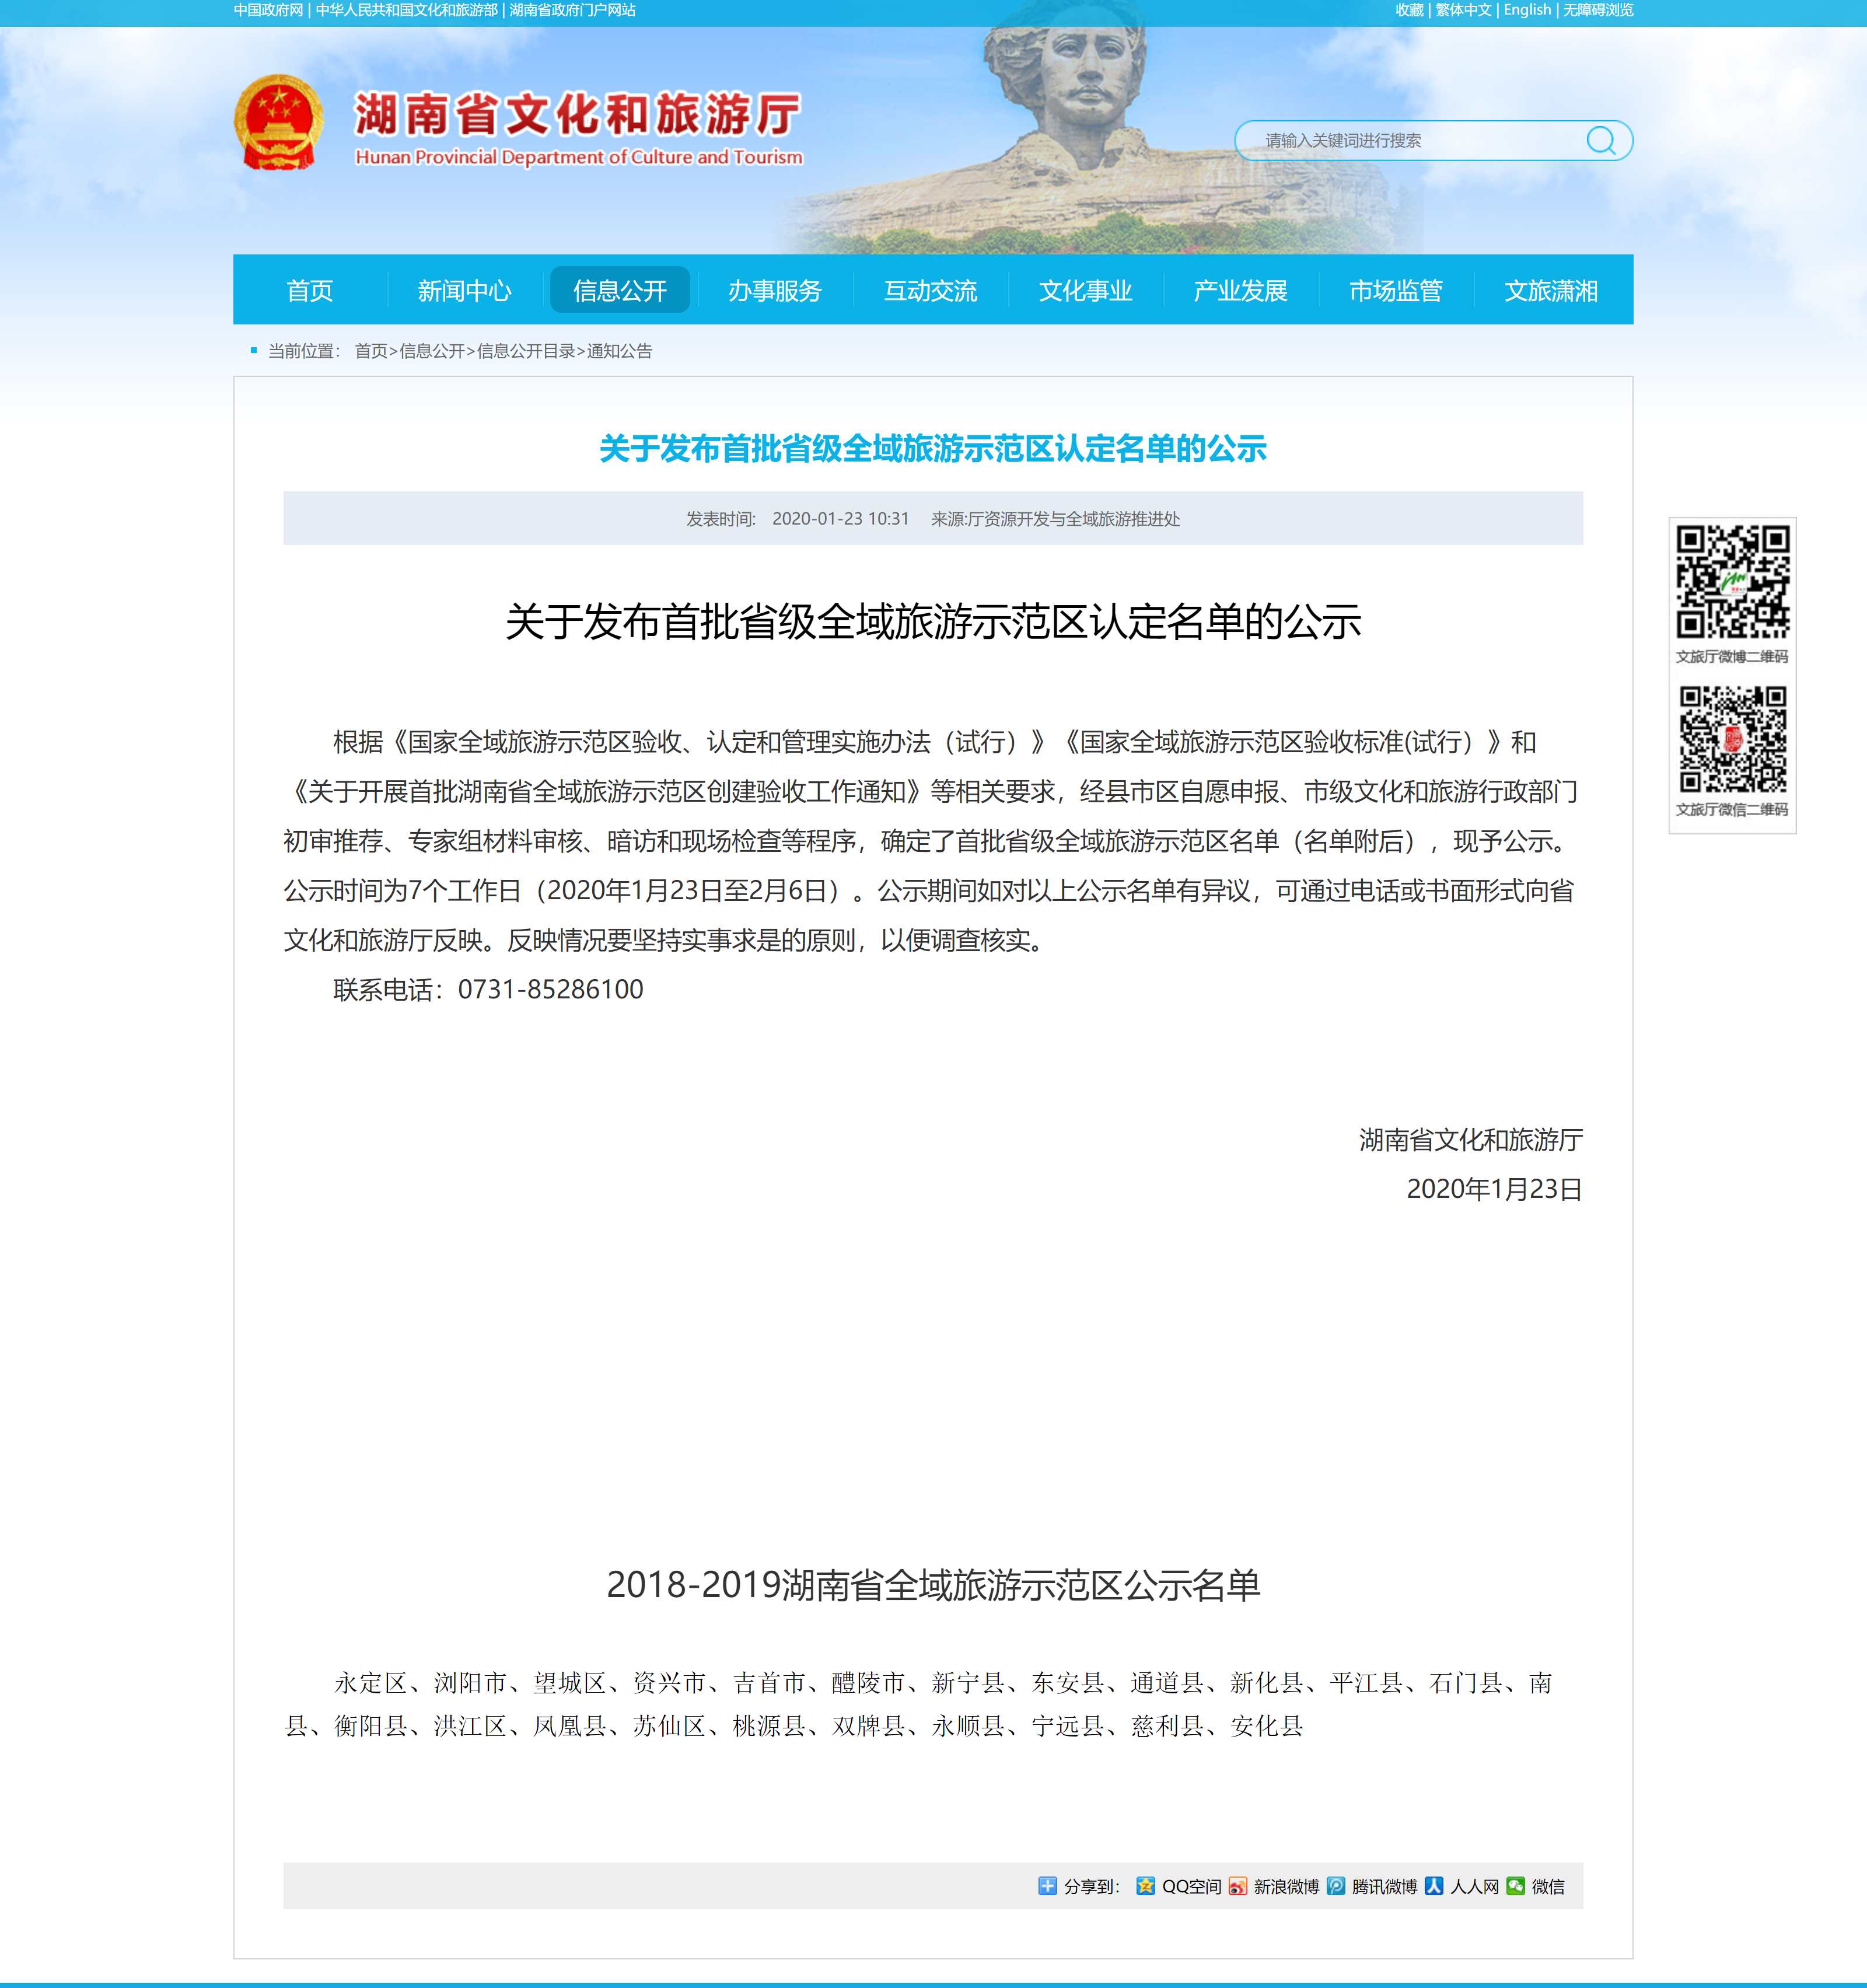 关于发布首批省级全域旅游示范区认定名单的公示 - 湖南省文化和旅游厅_副本.jpg